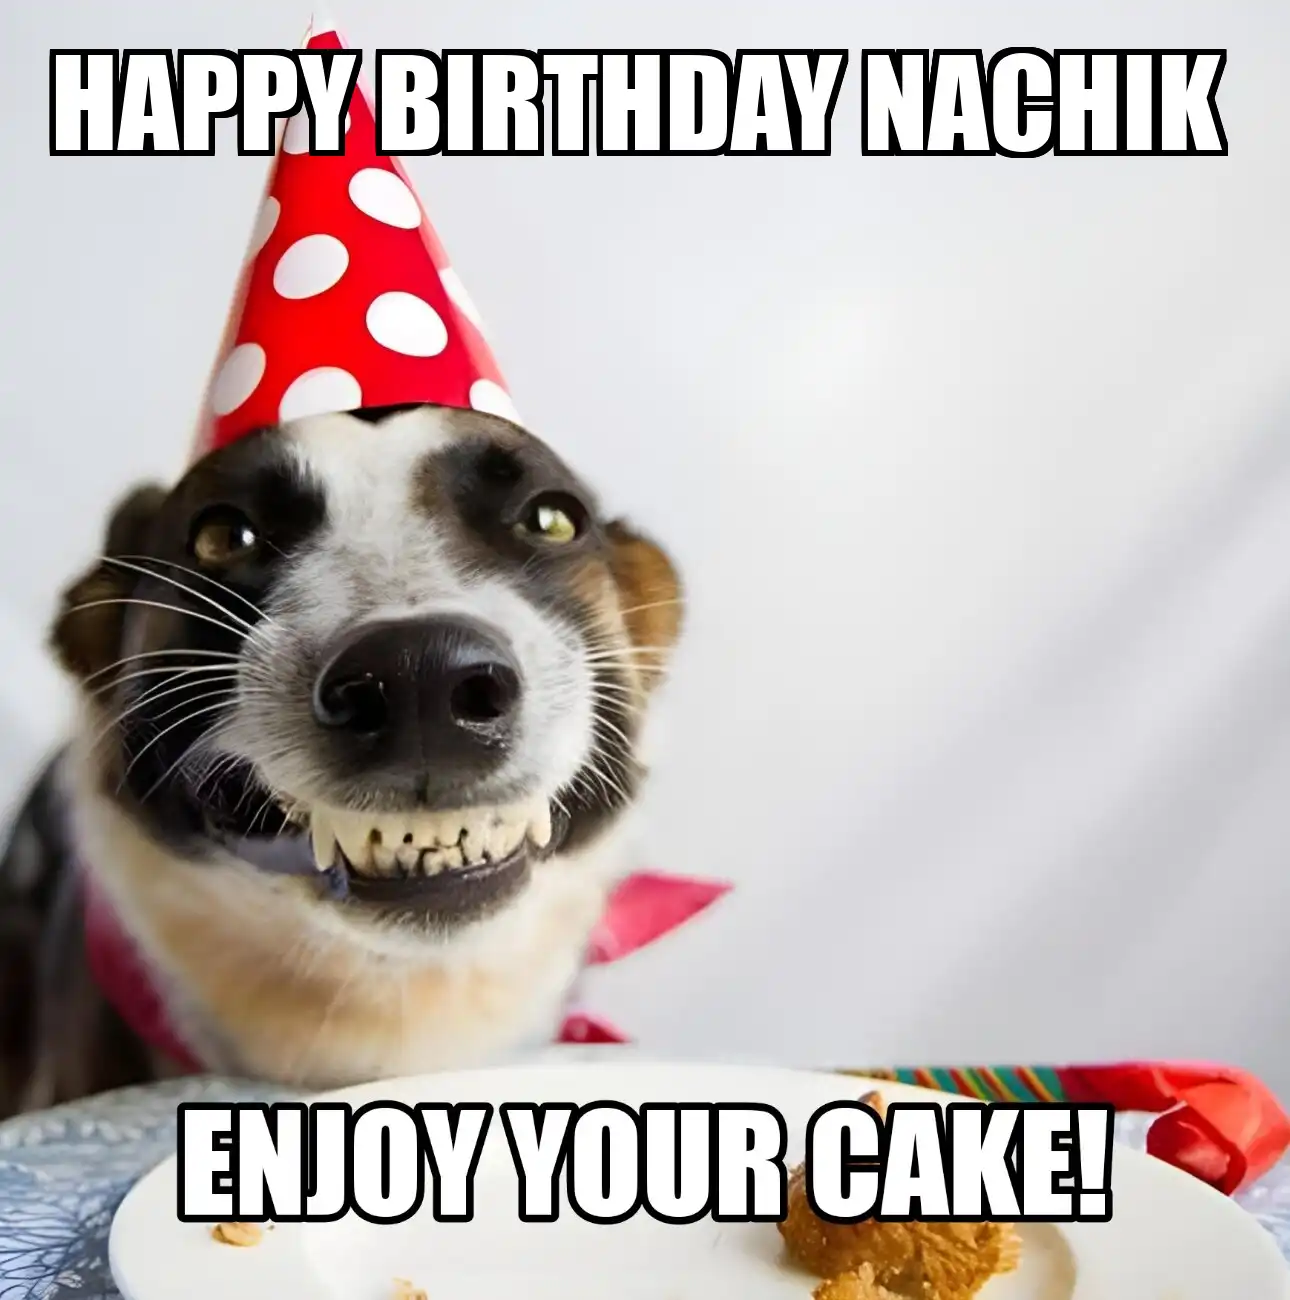 Happy Birthday Nachik Enjoy Your Cake Dog Meme